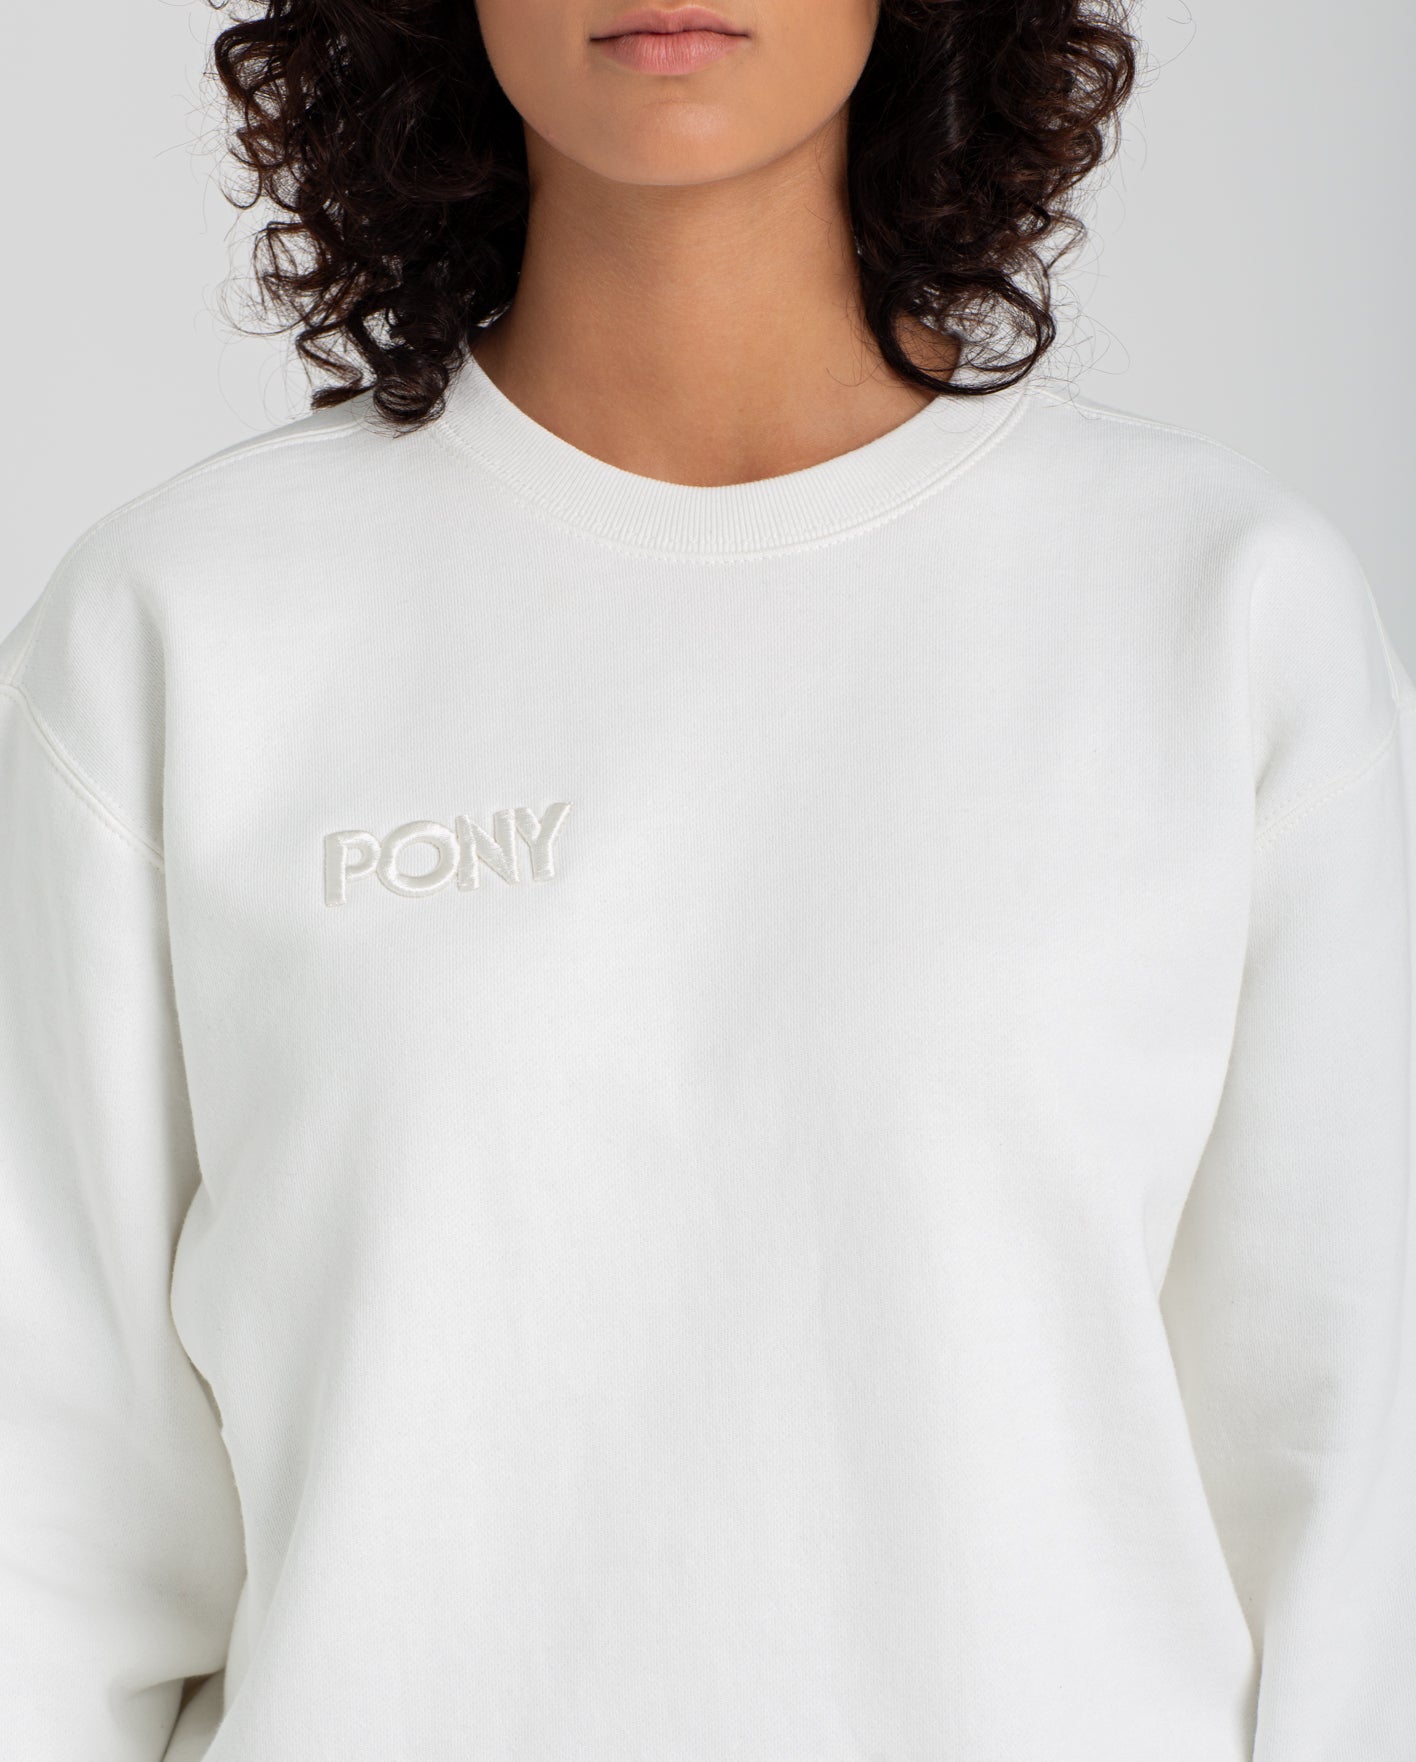 pony apparel